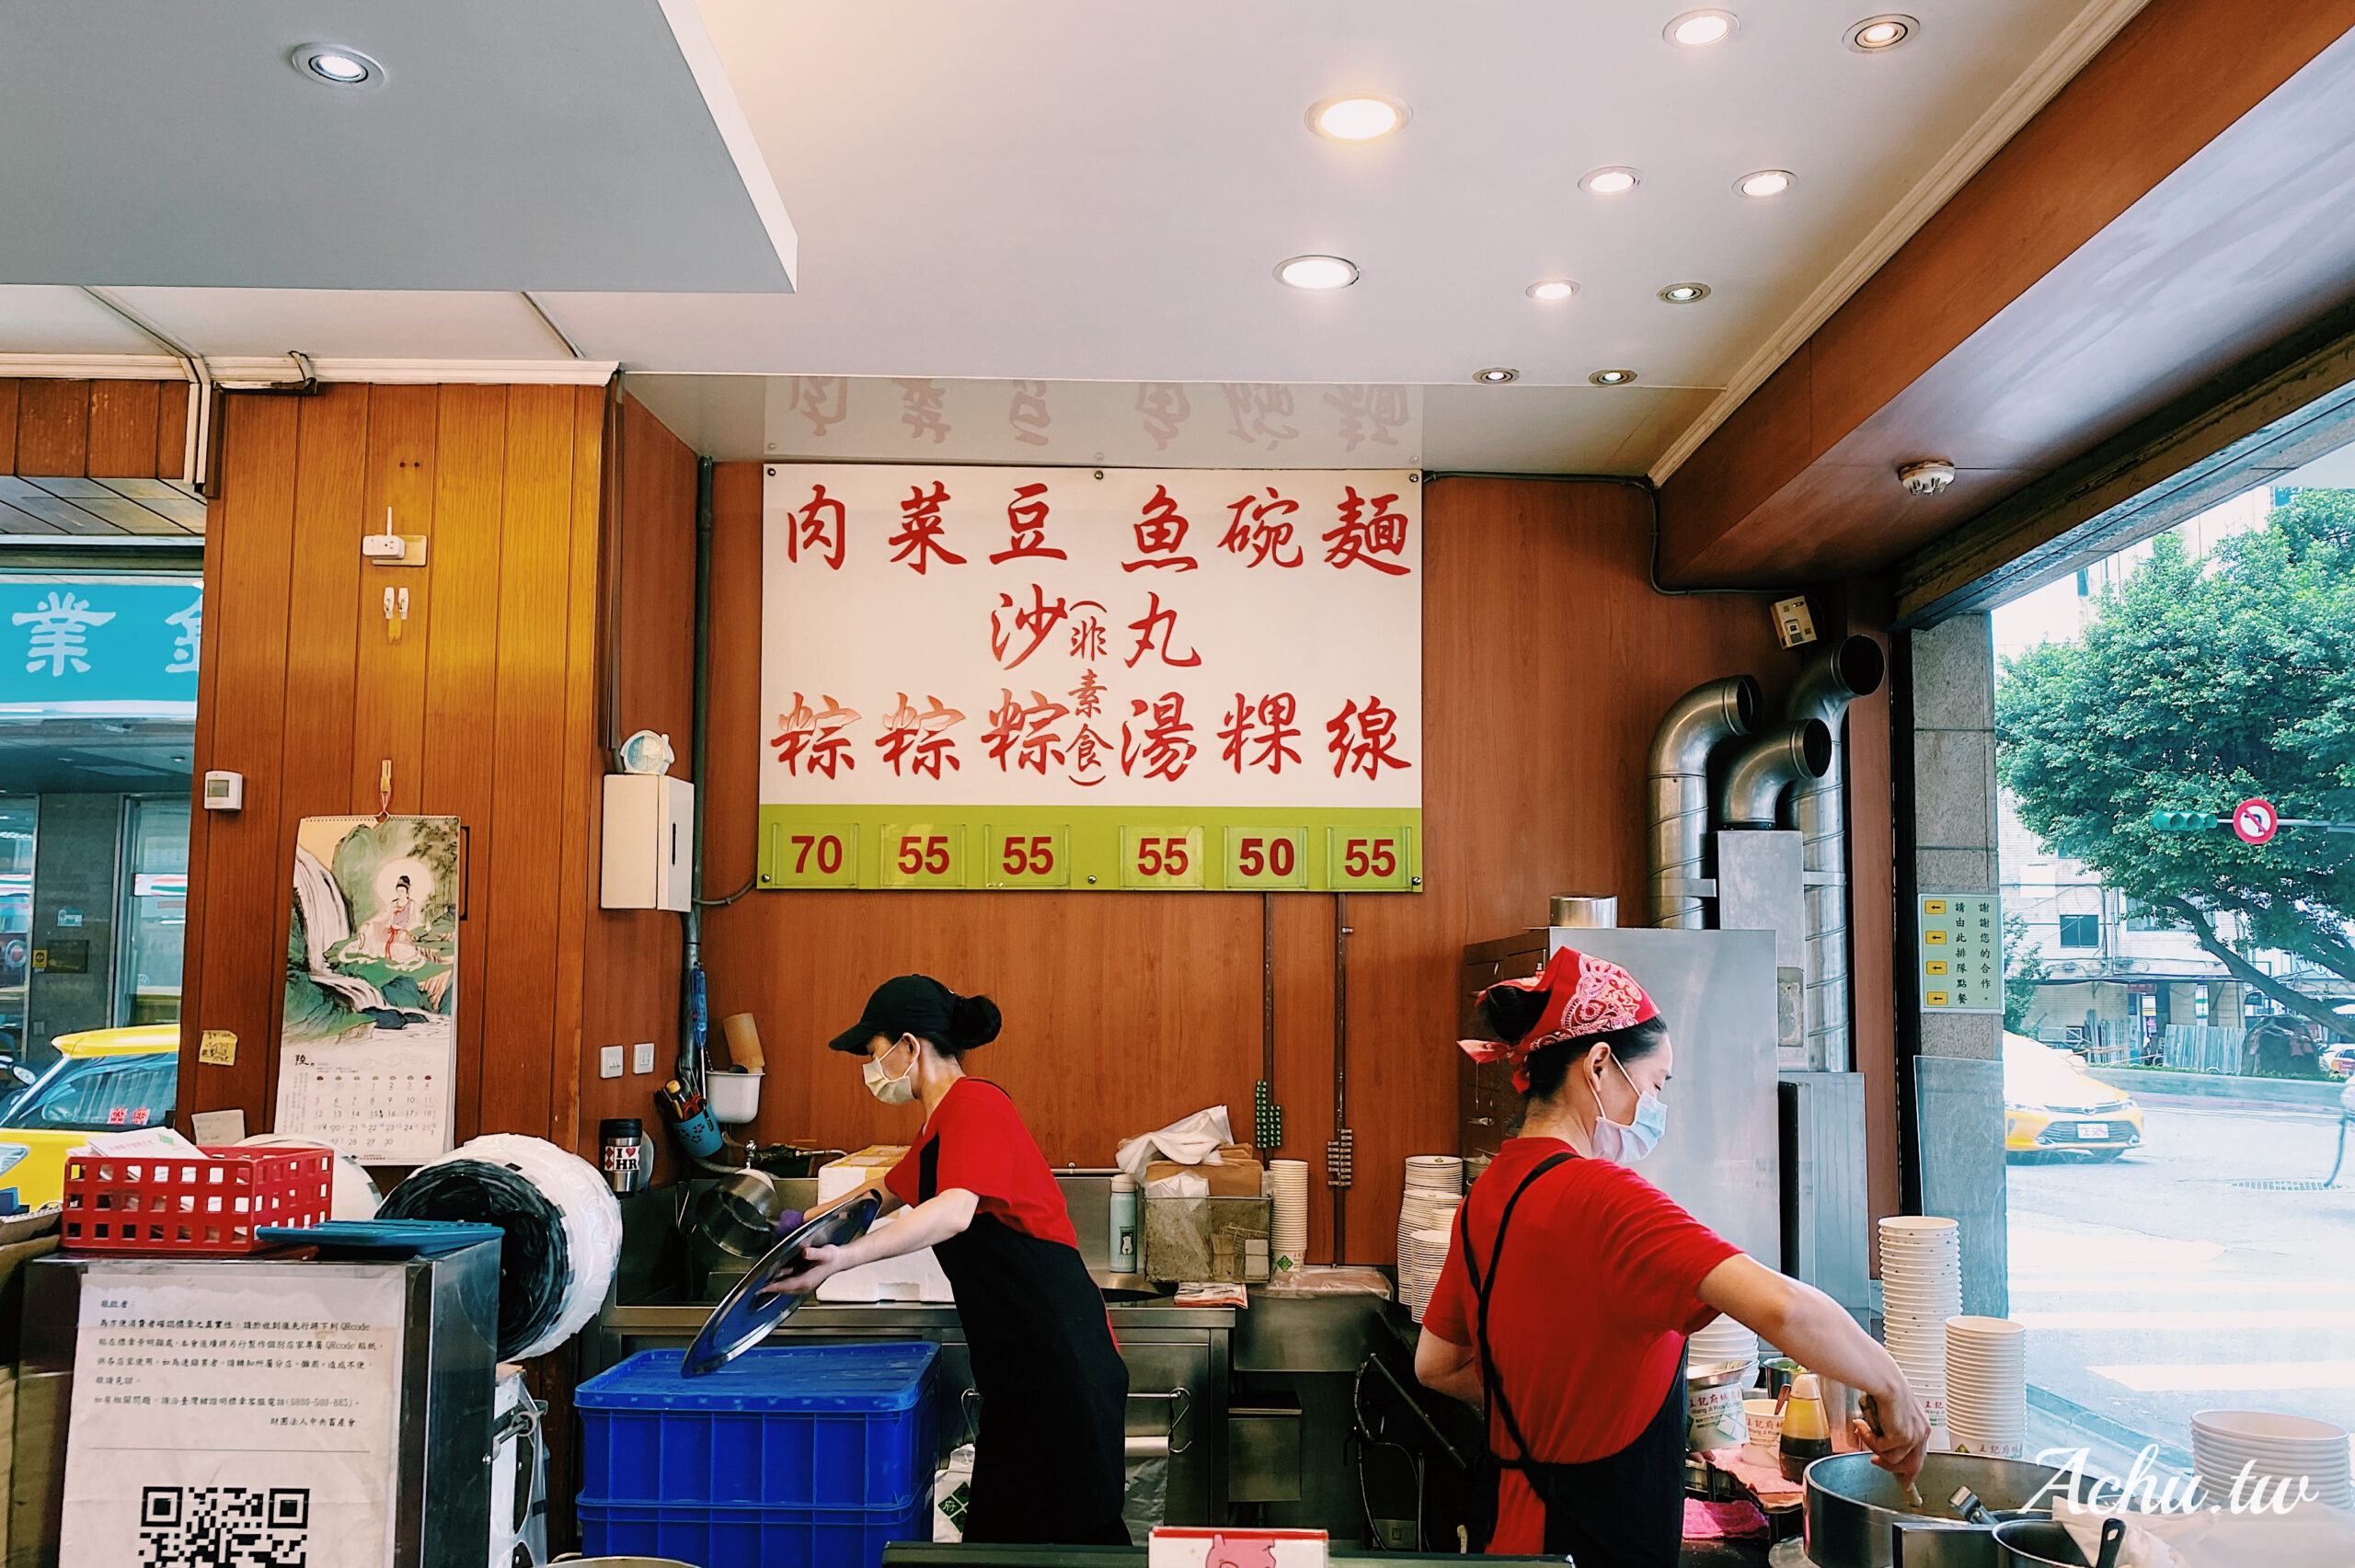 【小巨蛋美食】王記府城肉粽 在北部也吃得到美味的南部粽 (菜單)